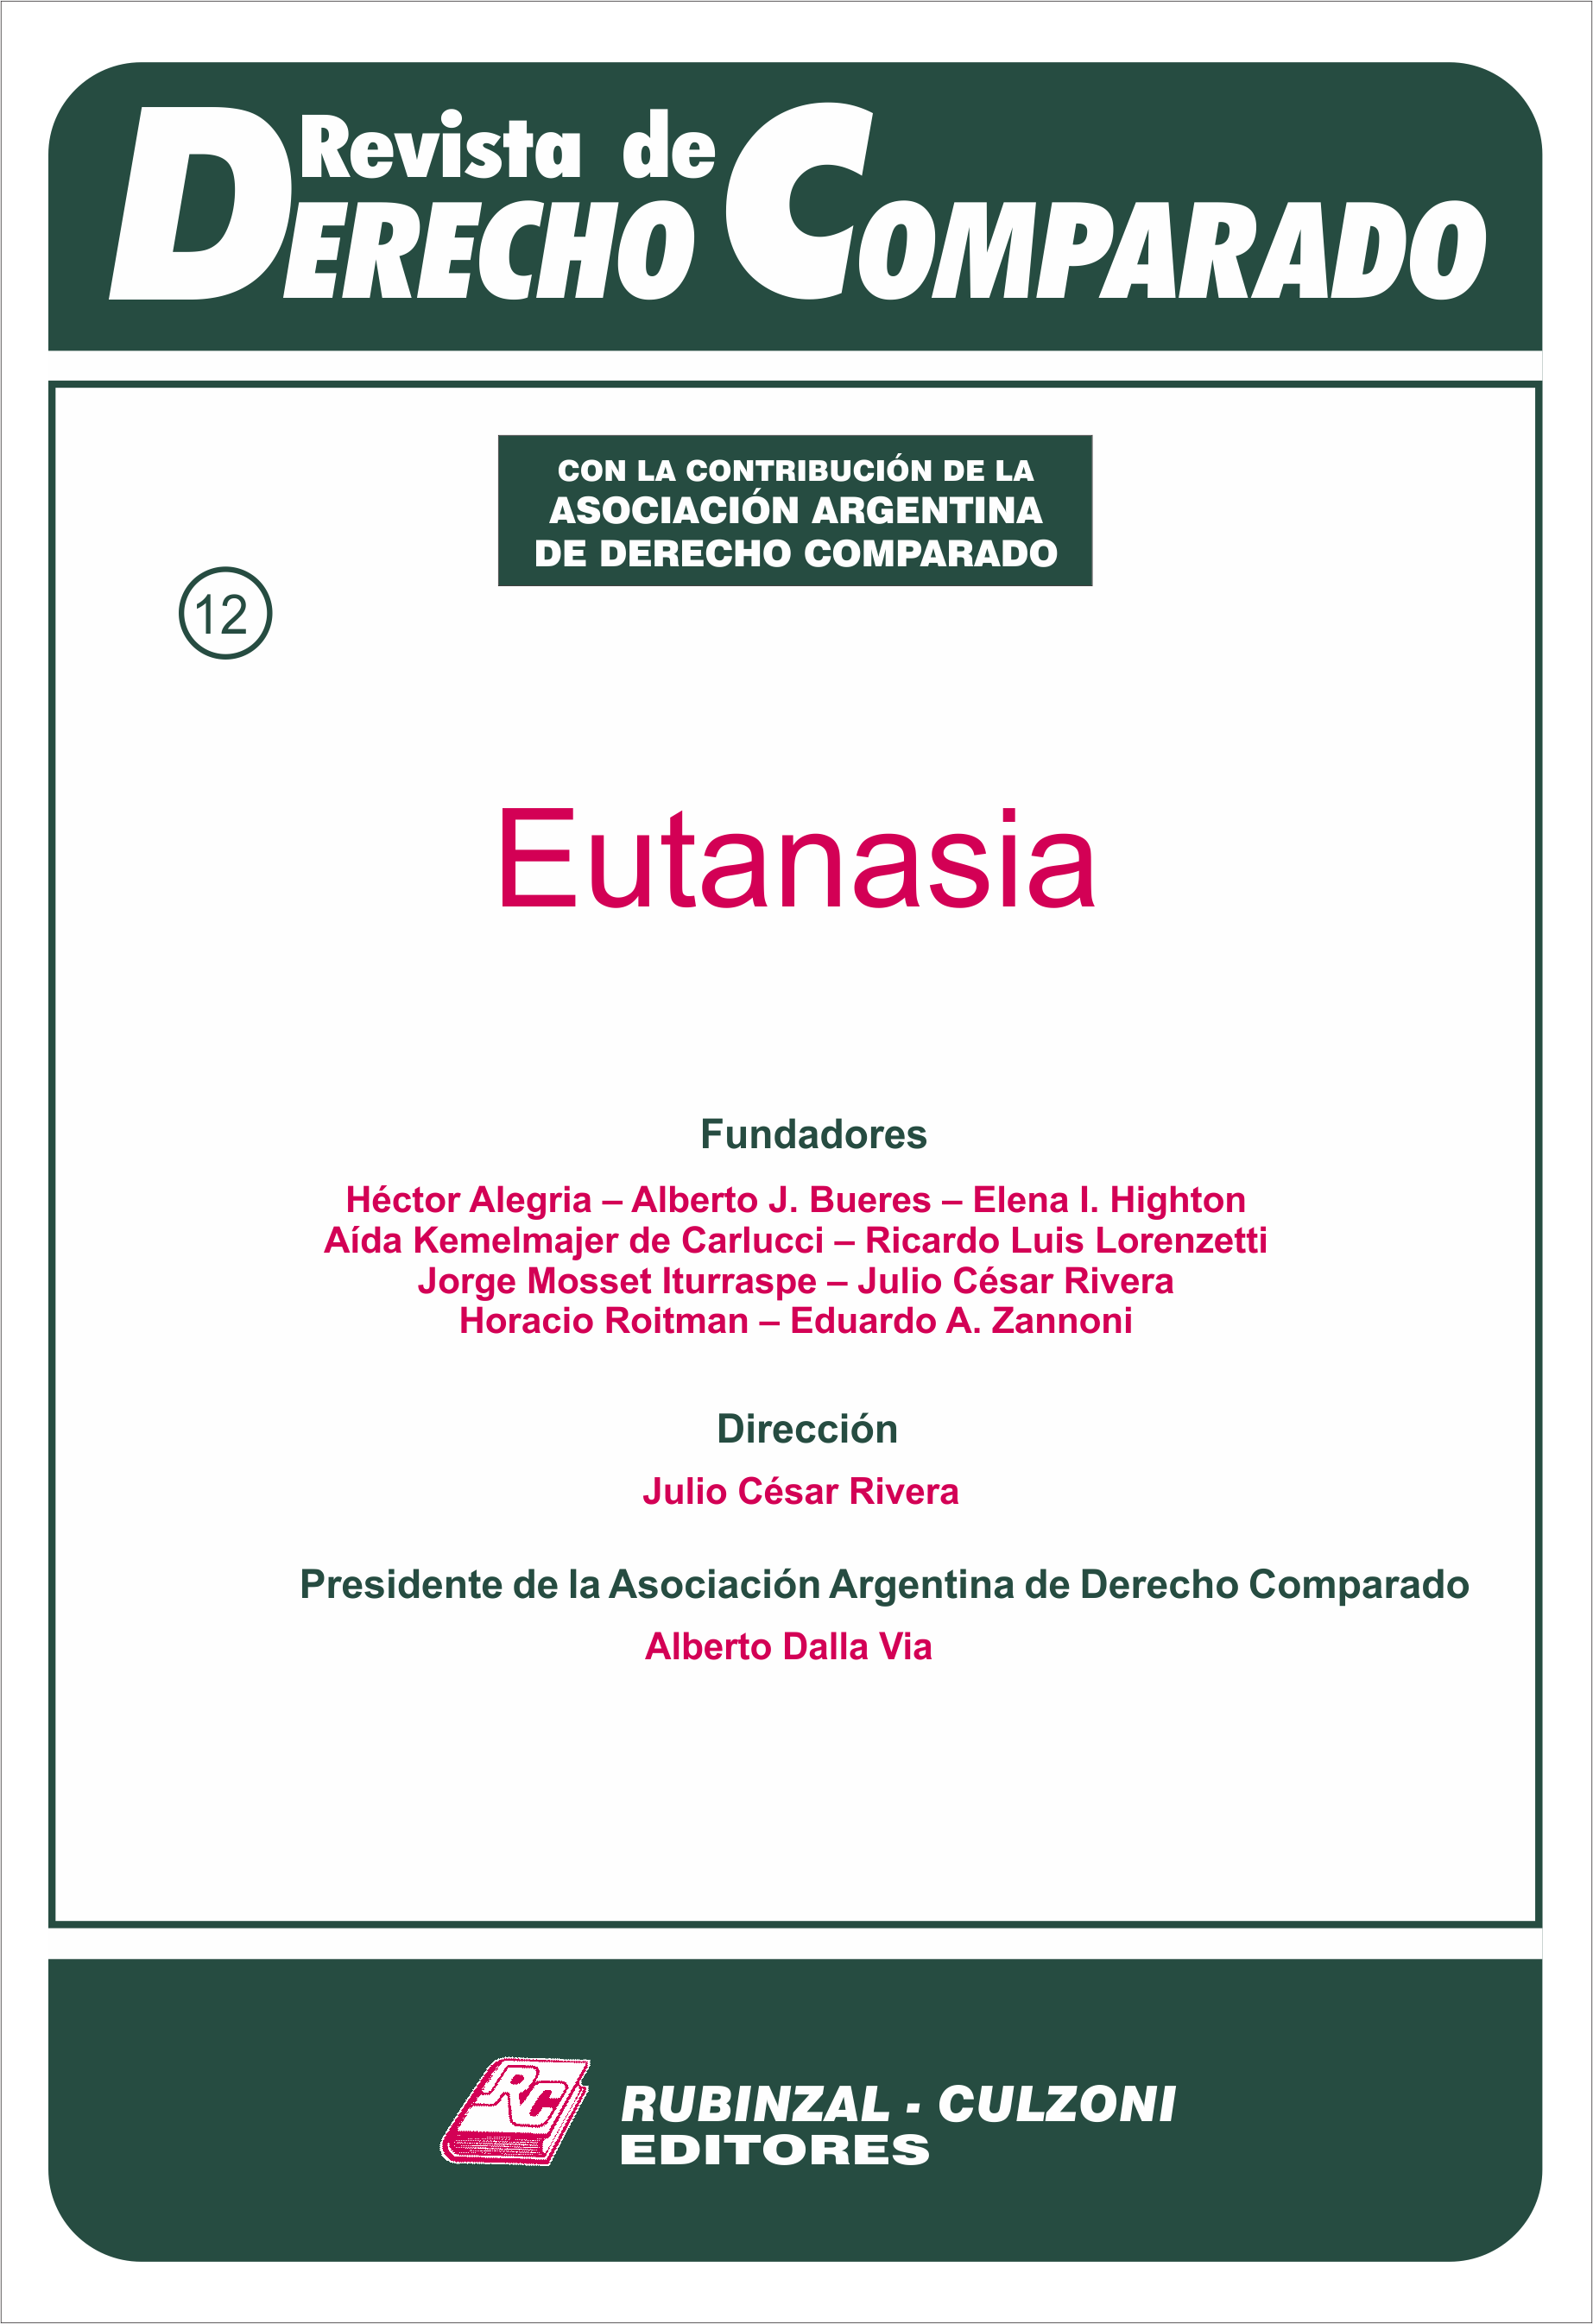 Revista de Derecho Comparado - Doctrina (Eutanasia).